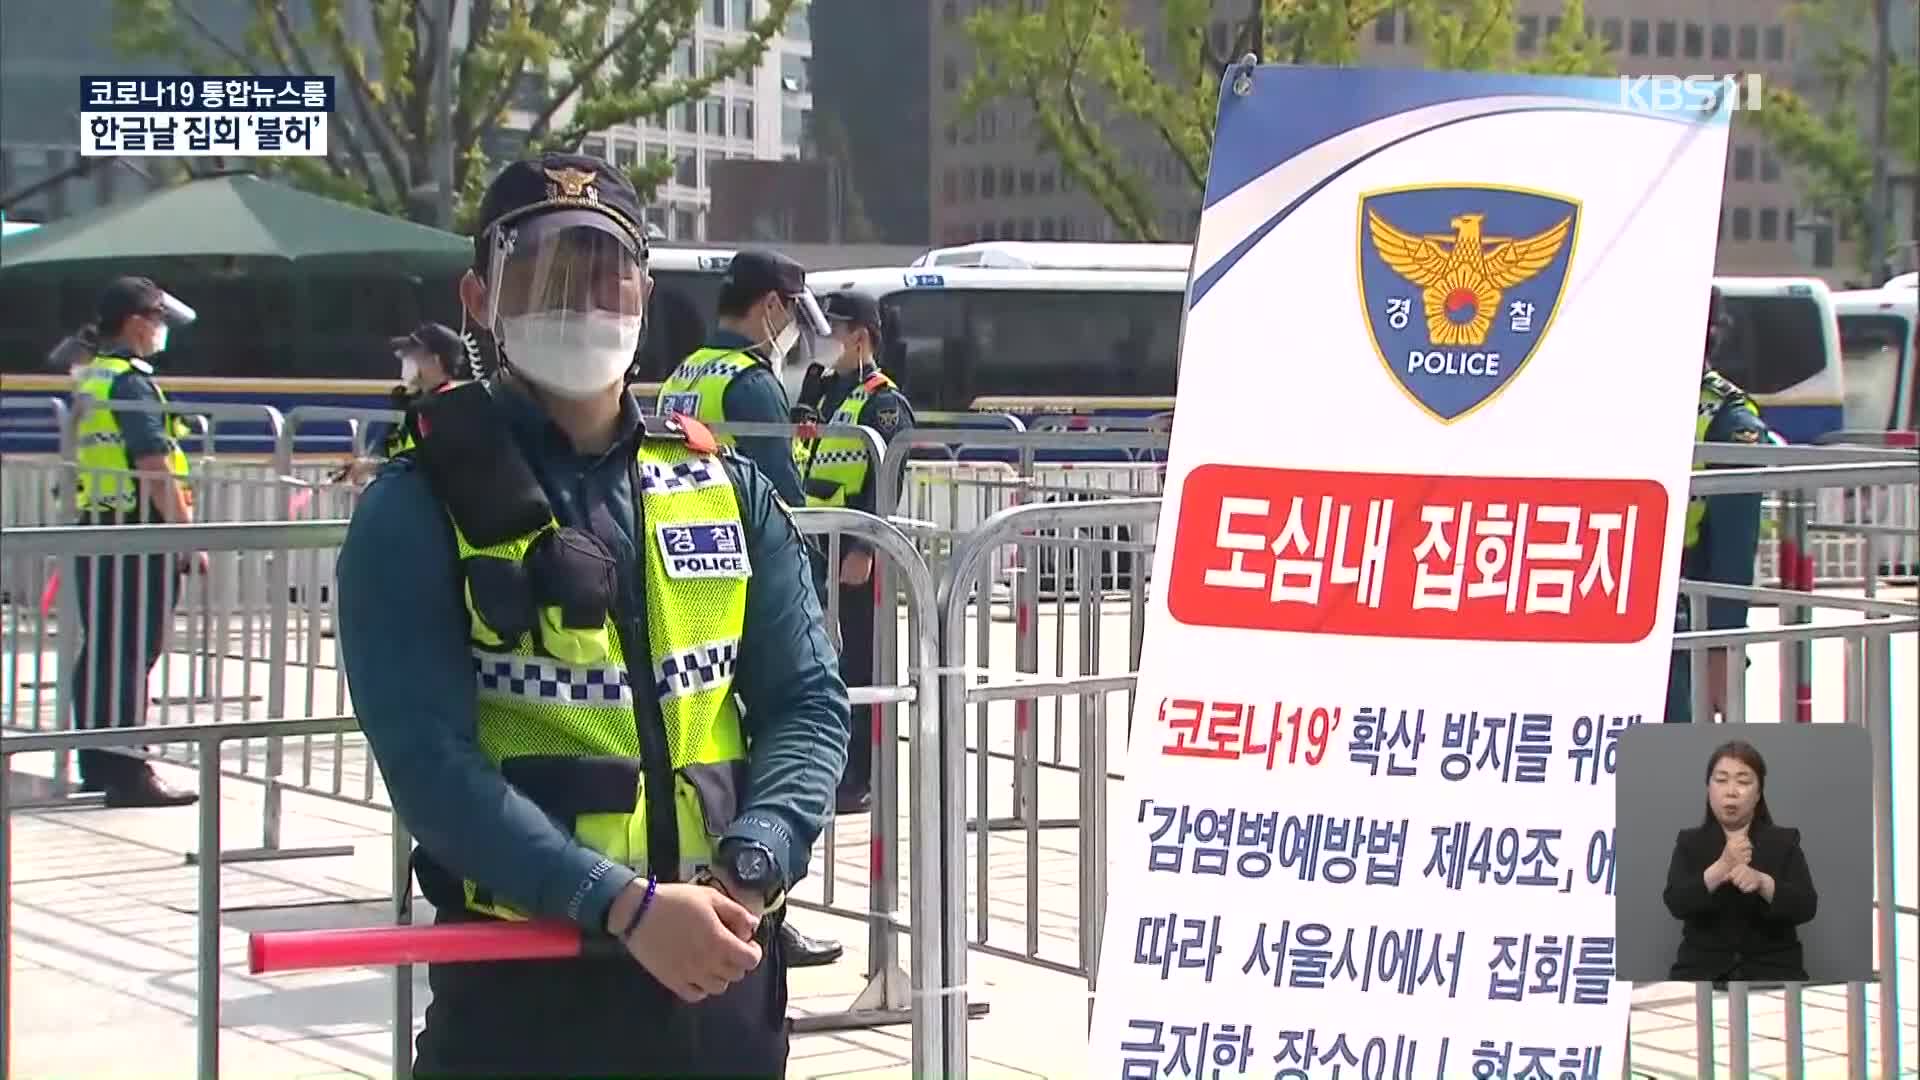 “한글날 집회 엄정 대응”…모레 거리두기 조정 여부 결정